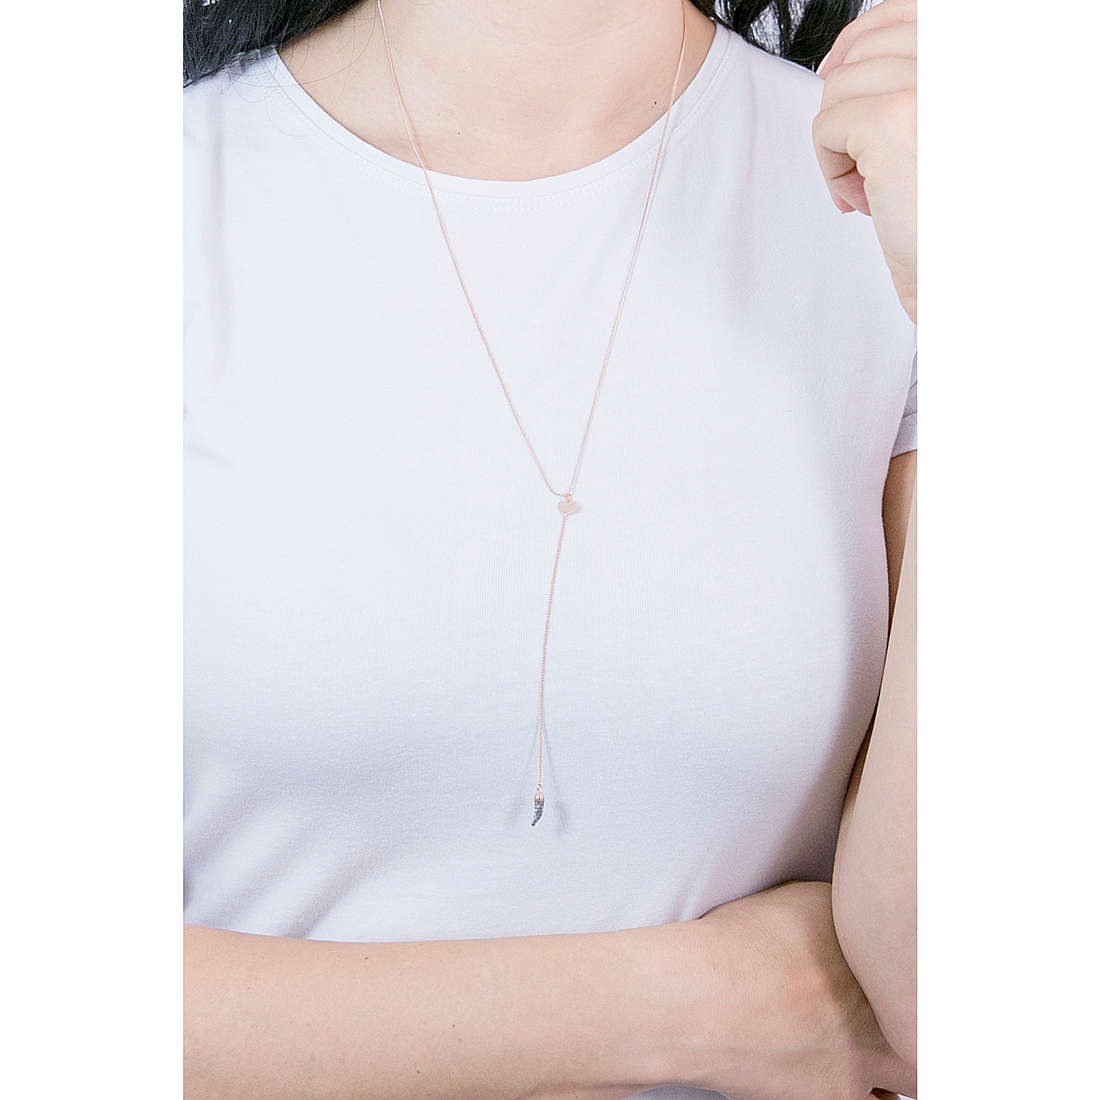 Rebecca necklaces Jolie woman SJOKAR39 wearing